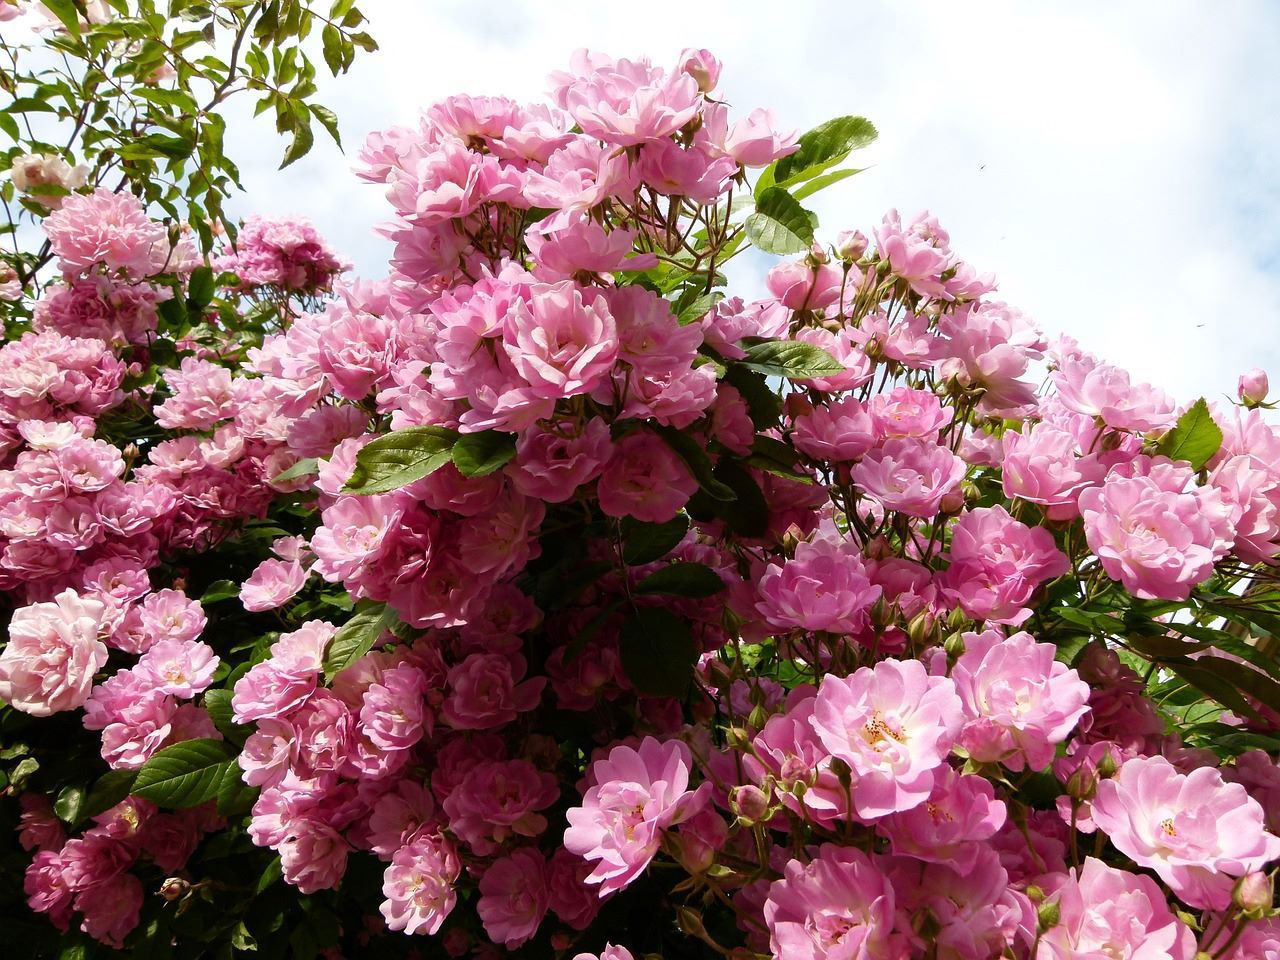 Élégant rosier en fleurs, ses délicates pétales apportent charme et douceur au jardin printanier